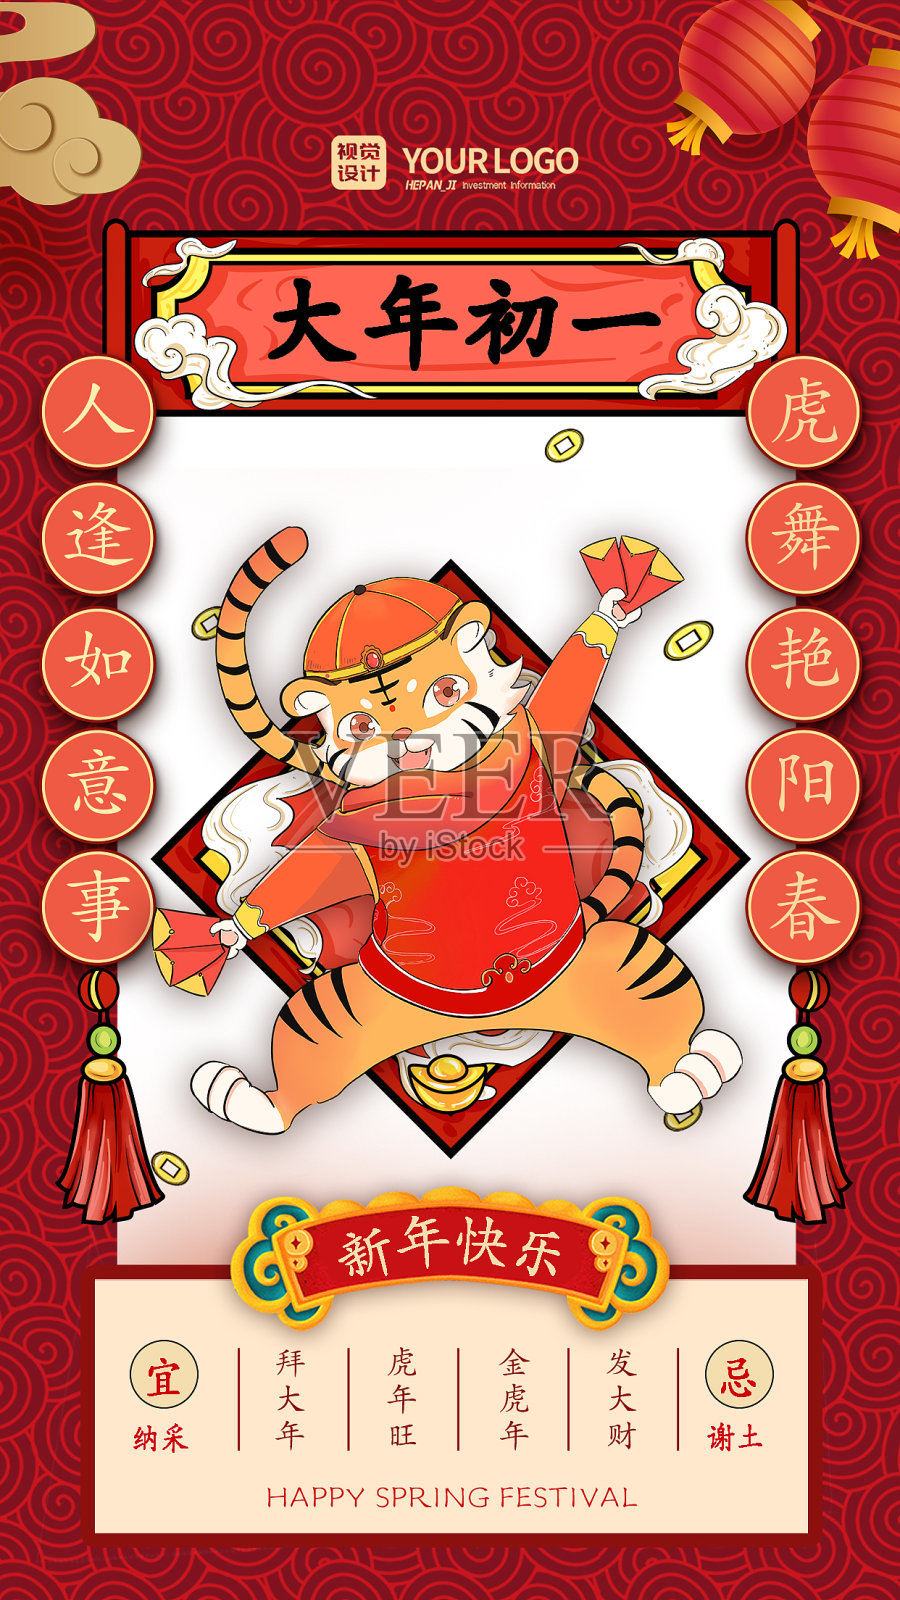 红色经典国潮风大年初一虎年春节系列手机海报设计模板素材